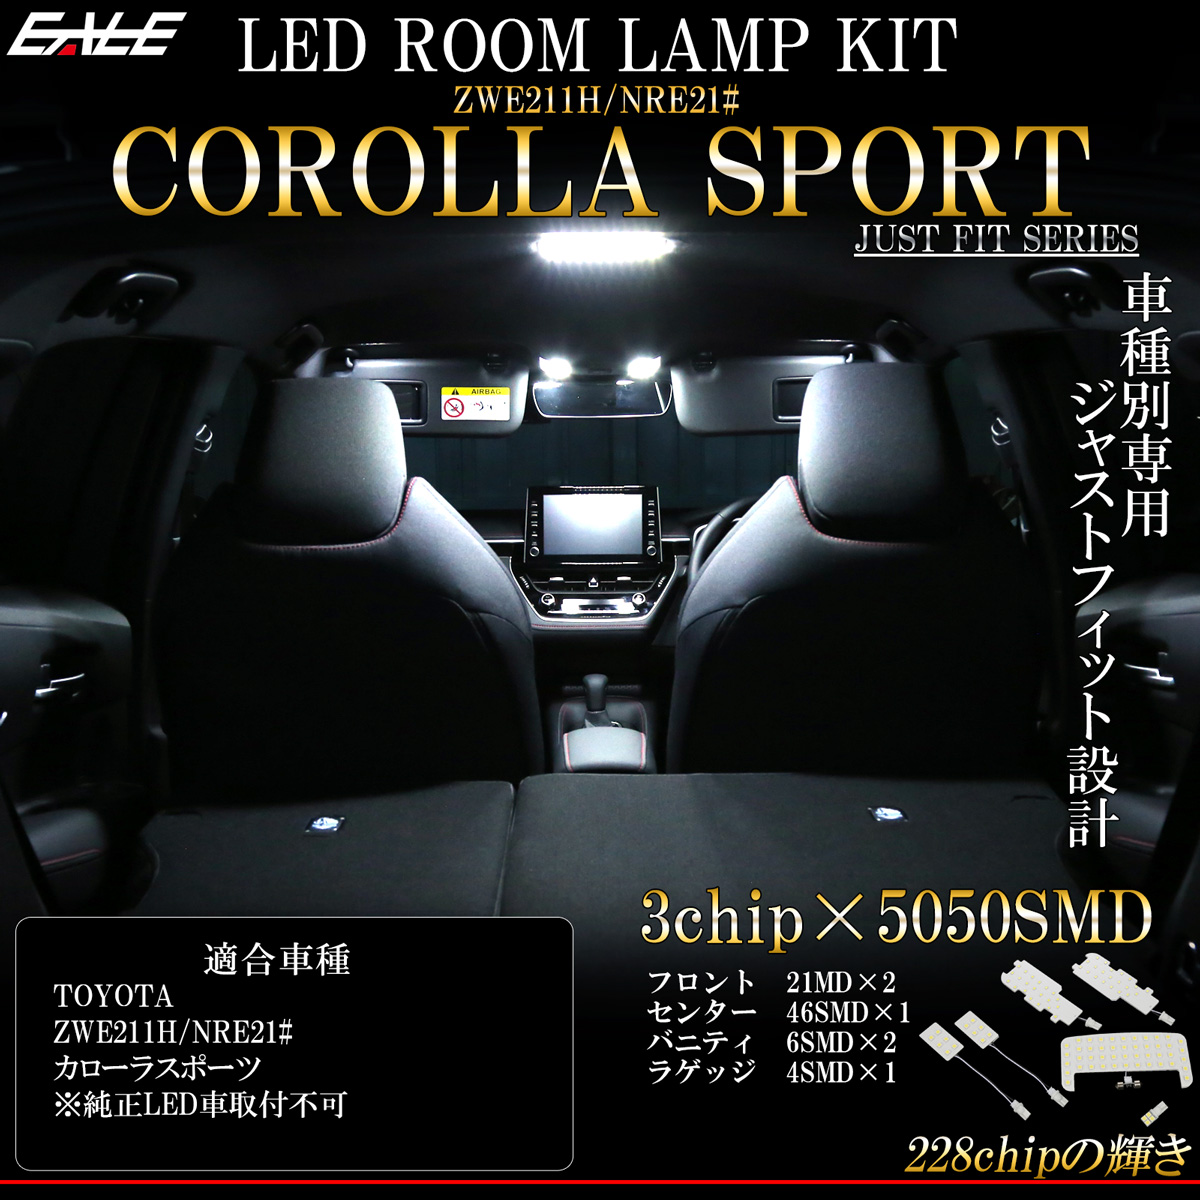 210系 カローラ スポーツ LED ルームランプ 専用設計 純白光 7000K ホワイト 取説付 トヨタ車 R-483